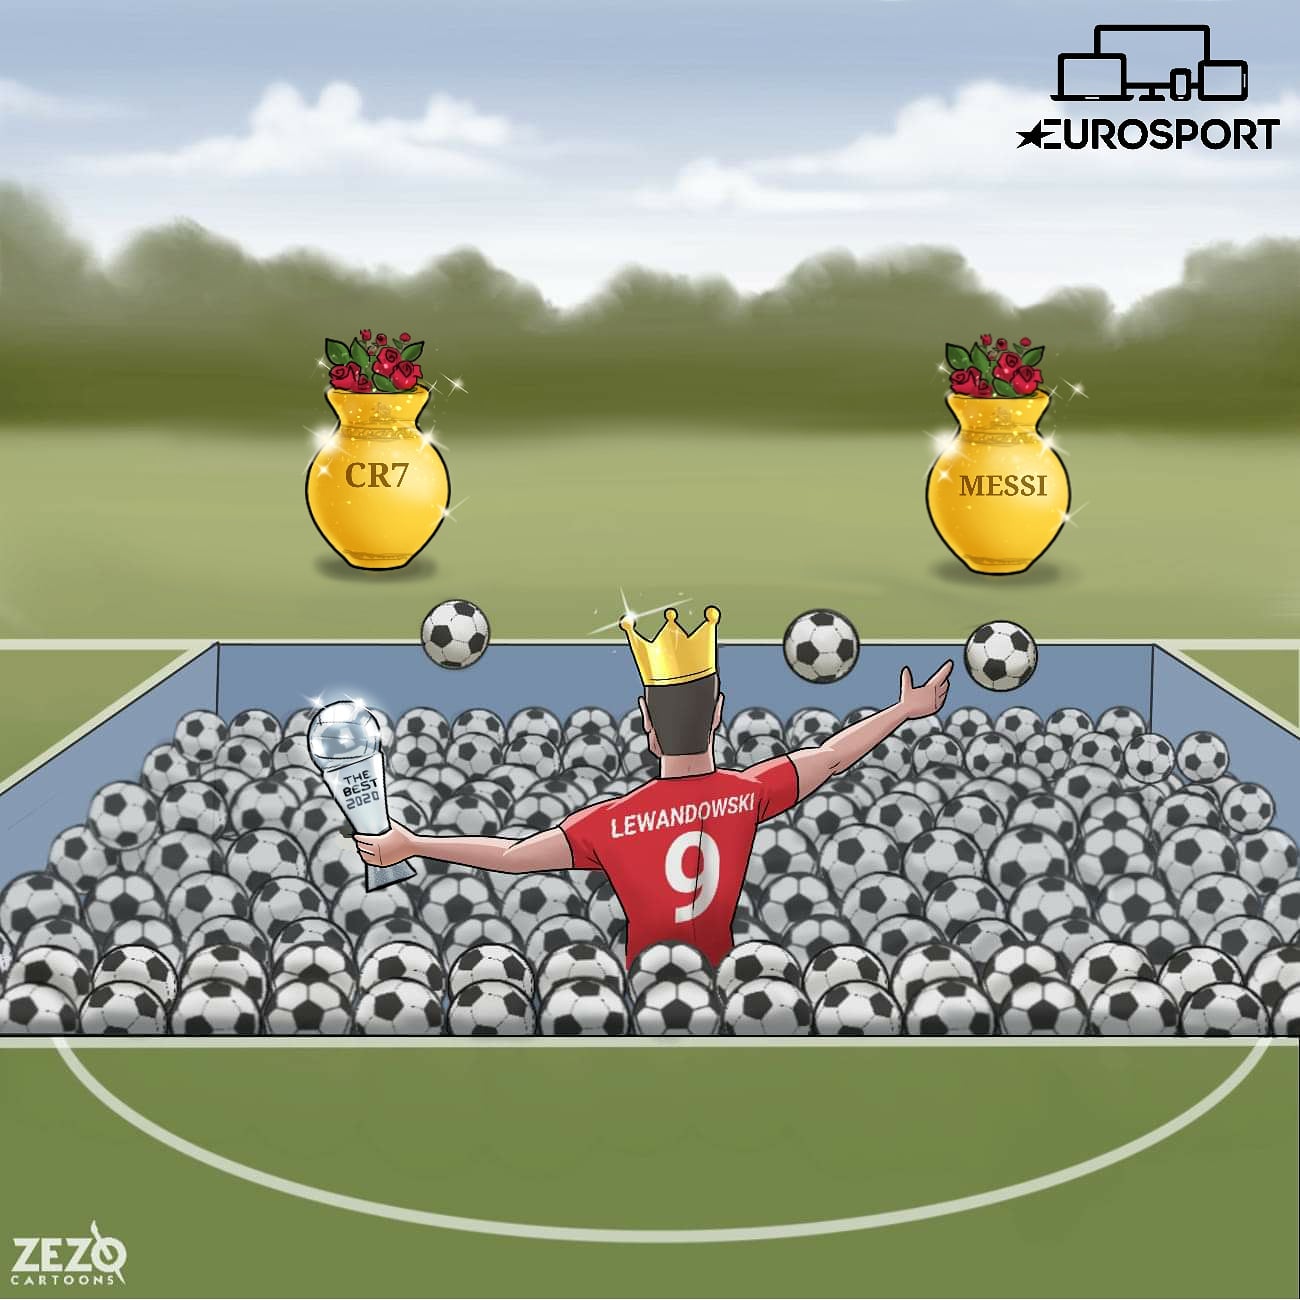 Lewandowski đã qua mặt Ronaldo lẫn Messi để lên đỉnh thế giới lần đầu tiên trong sự nghiệp. Ảnh: Zezo Cartoons.